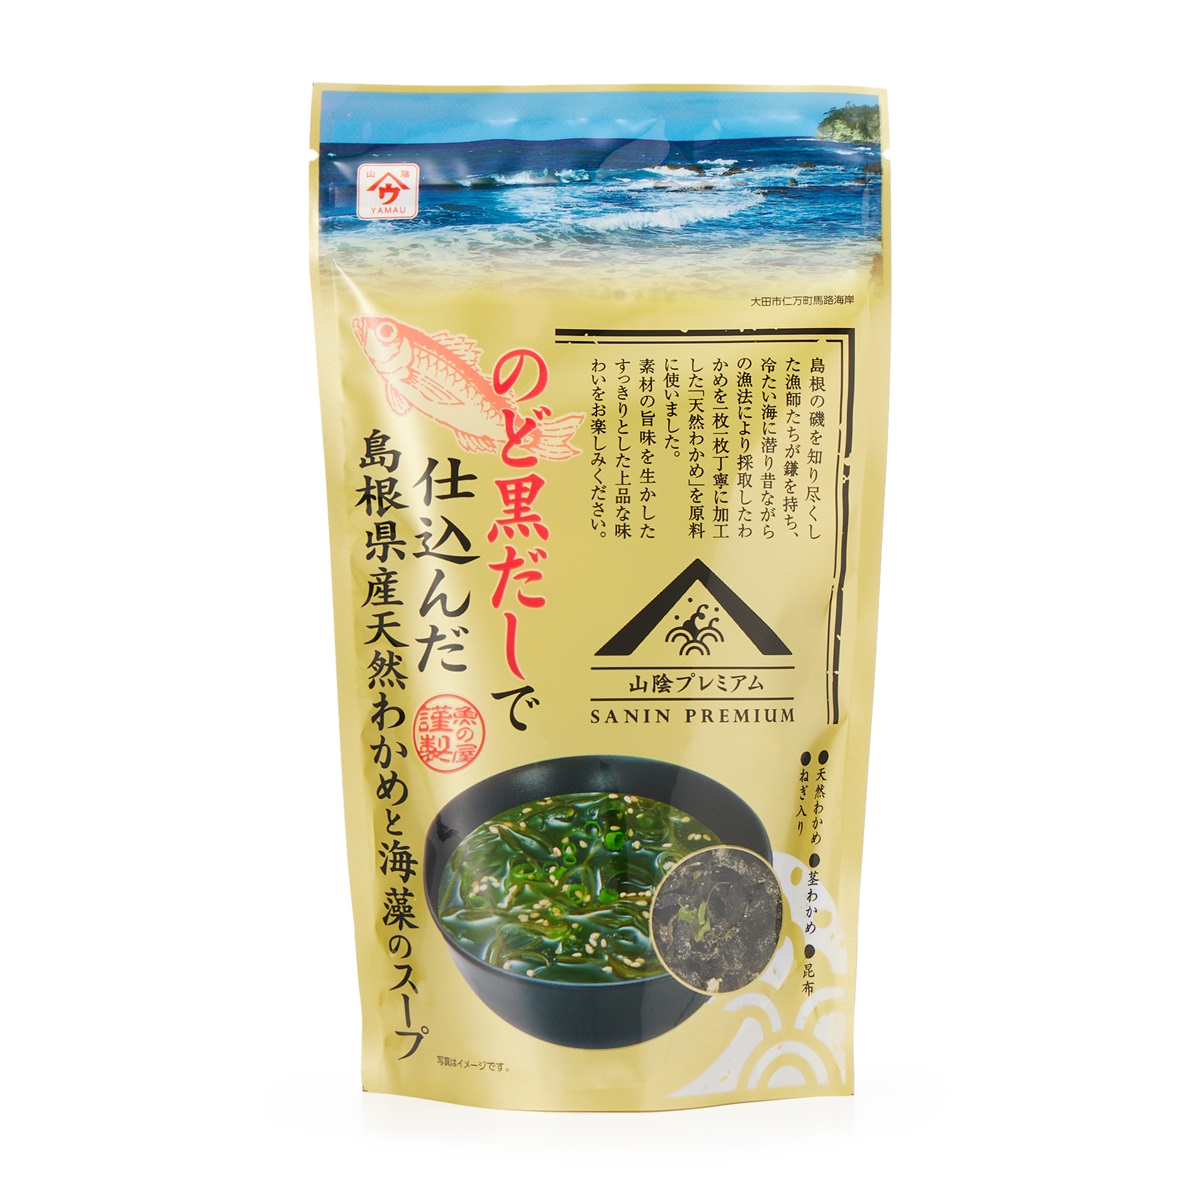 のど黒だしで仕込んだ島根県産天然わかめと海藻のスープ